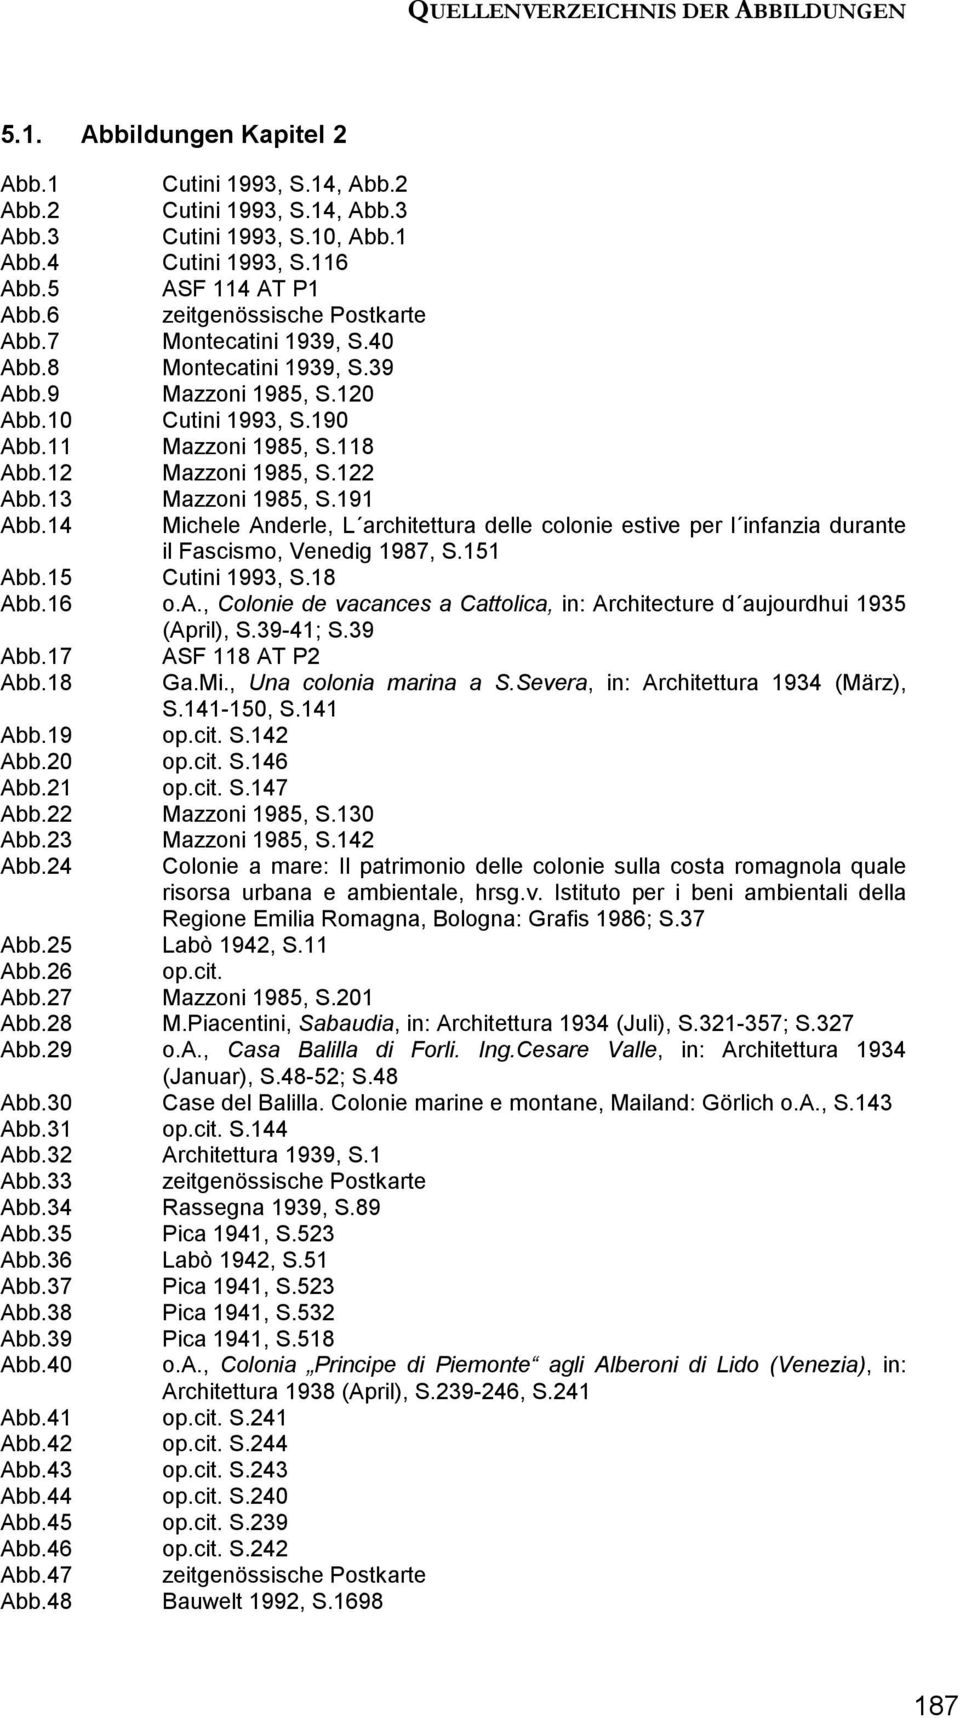 12 Mazzoni 1985, S.122 Abb.13 Mazzoni 1985, S.191 Abb.14 Michele Anderle, L architettura delle colonie estive per l infanzia durante il Fascismo, Venedig 1987, S.151 Abb.15 Cutini 1993, S.18 Abb.16 o.